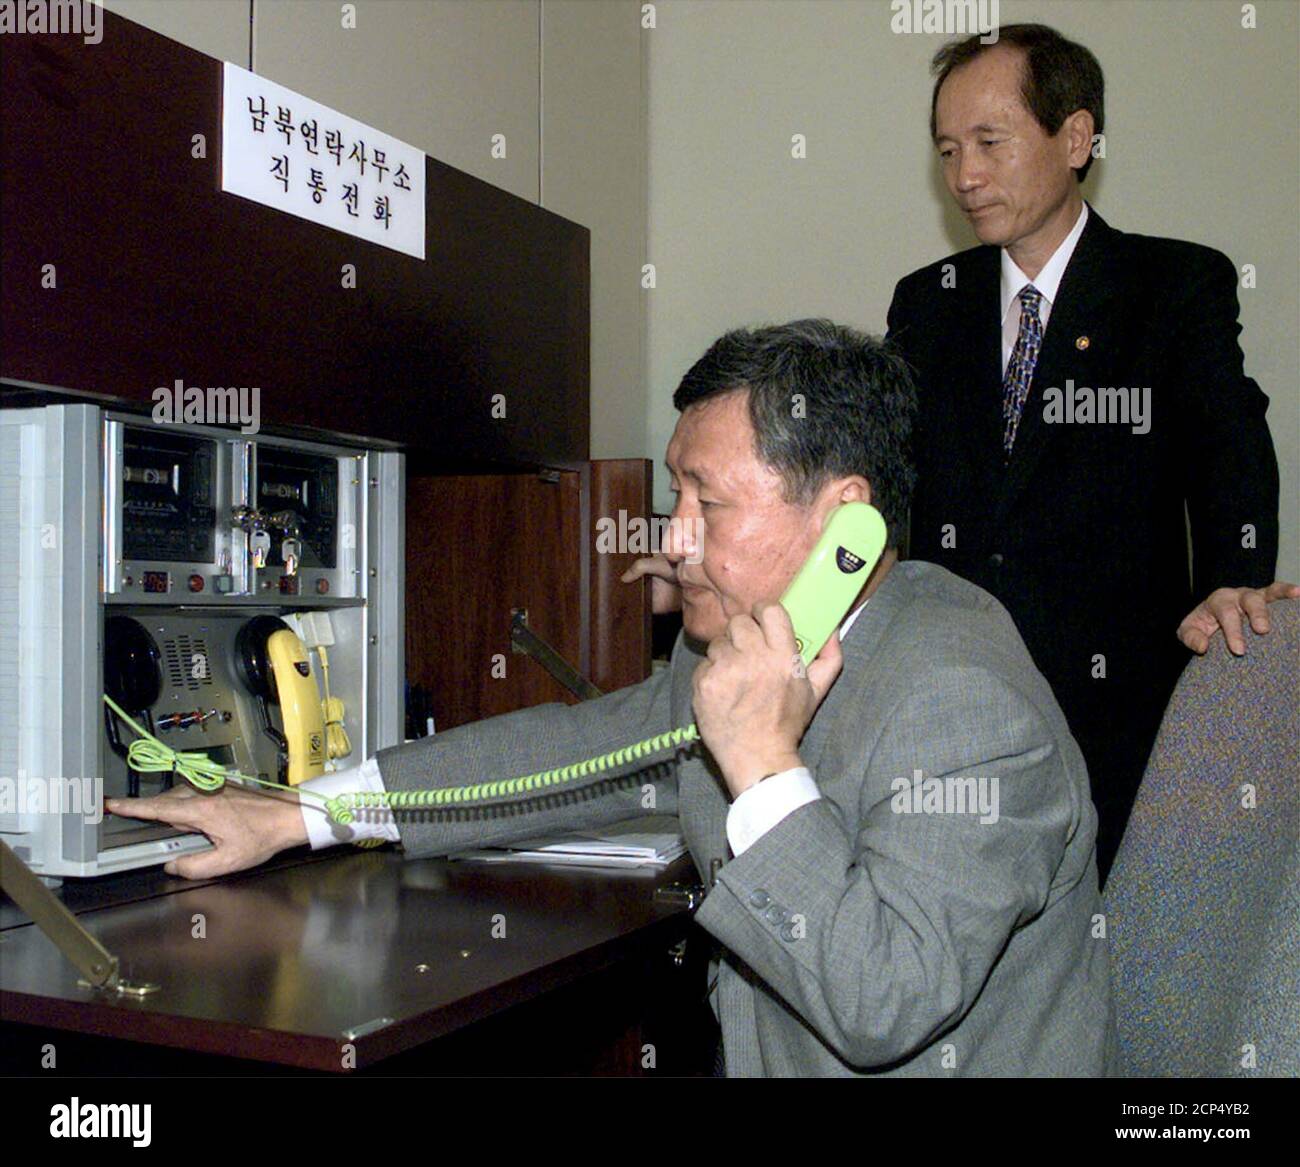 Der südkoreanische Vereinigungsminister Park Jae-Kyu (R) beobachtet, wie ein Beamter, Oh sei Eung, nach der Wiedereröffnung des Süd-Nord-Verbindungsbüros im Grenzdorf Panmunjom zwischen den beiden Koreas am 14. August 2000 einen Direktanruf abgibt. Hunderte von älteren Koreanern, die vor einem halben Jahrhundert durch den Koreakrieg aus ihren Familien gerissen wurden, werden diese Woche in beispiellosen Treffen, die Trauma und Trauer sowie Freude und Aufregung hervorgerufen haben, kurz mit ihren Angehörigen vereint sein. DL Stockfoto